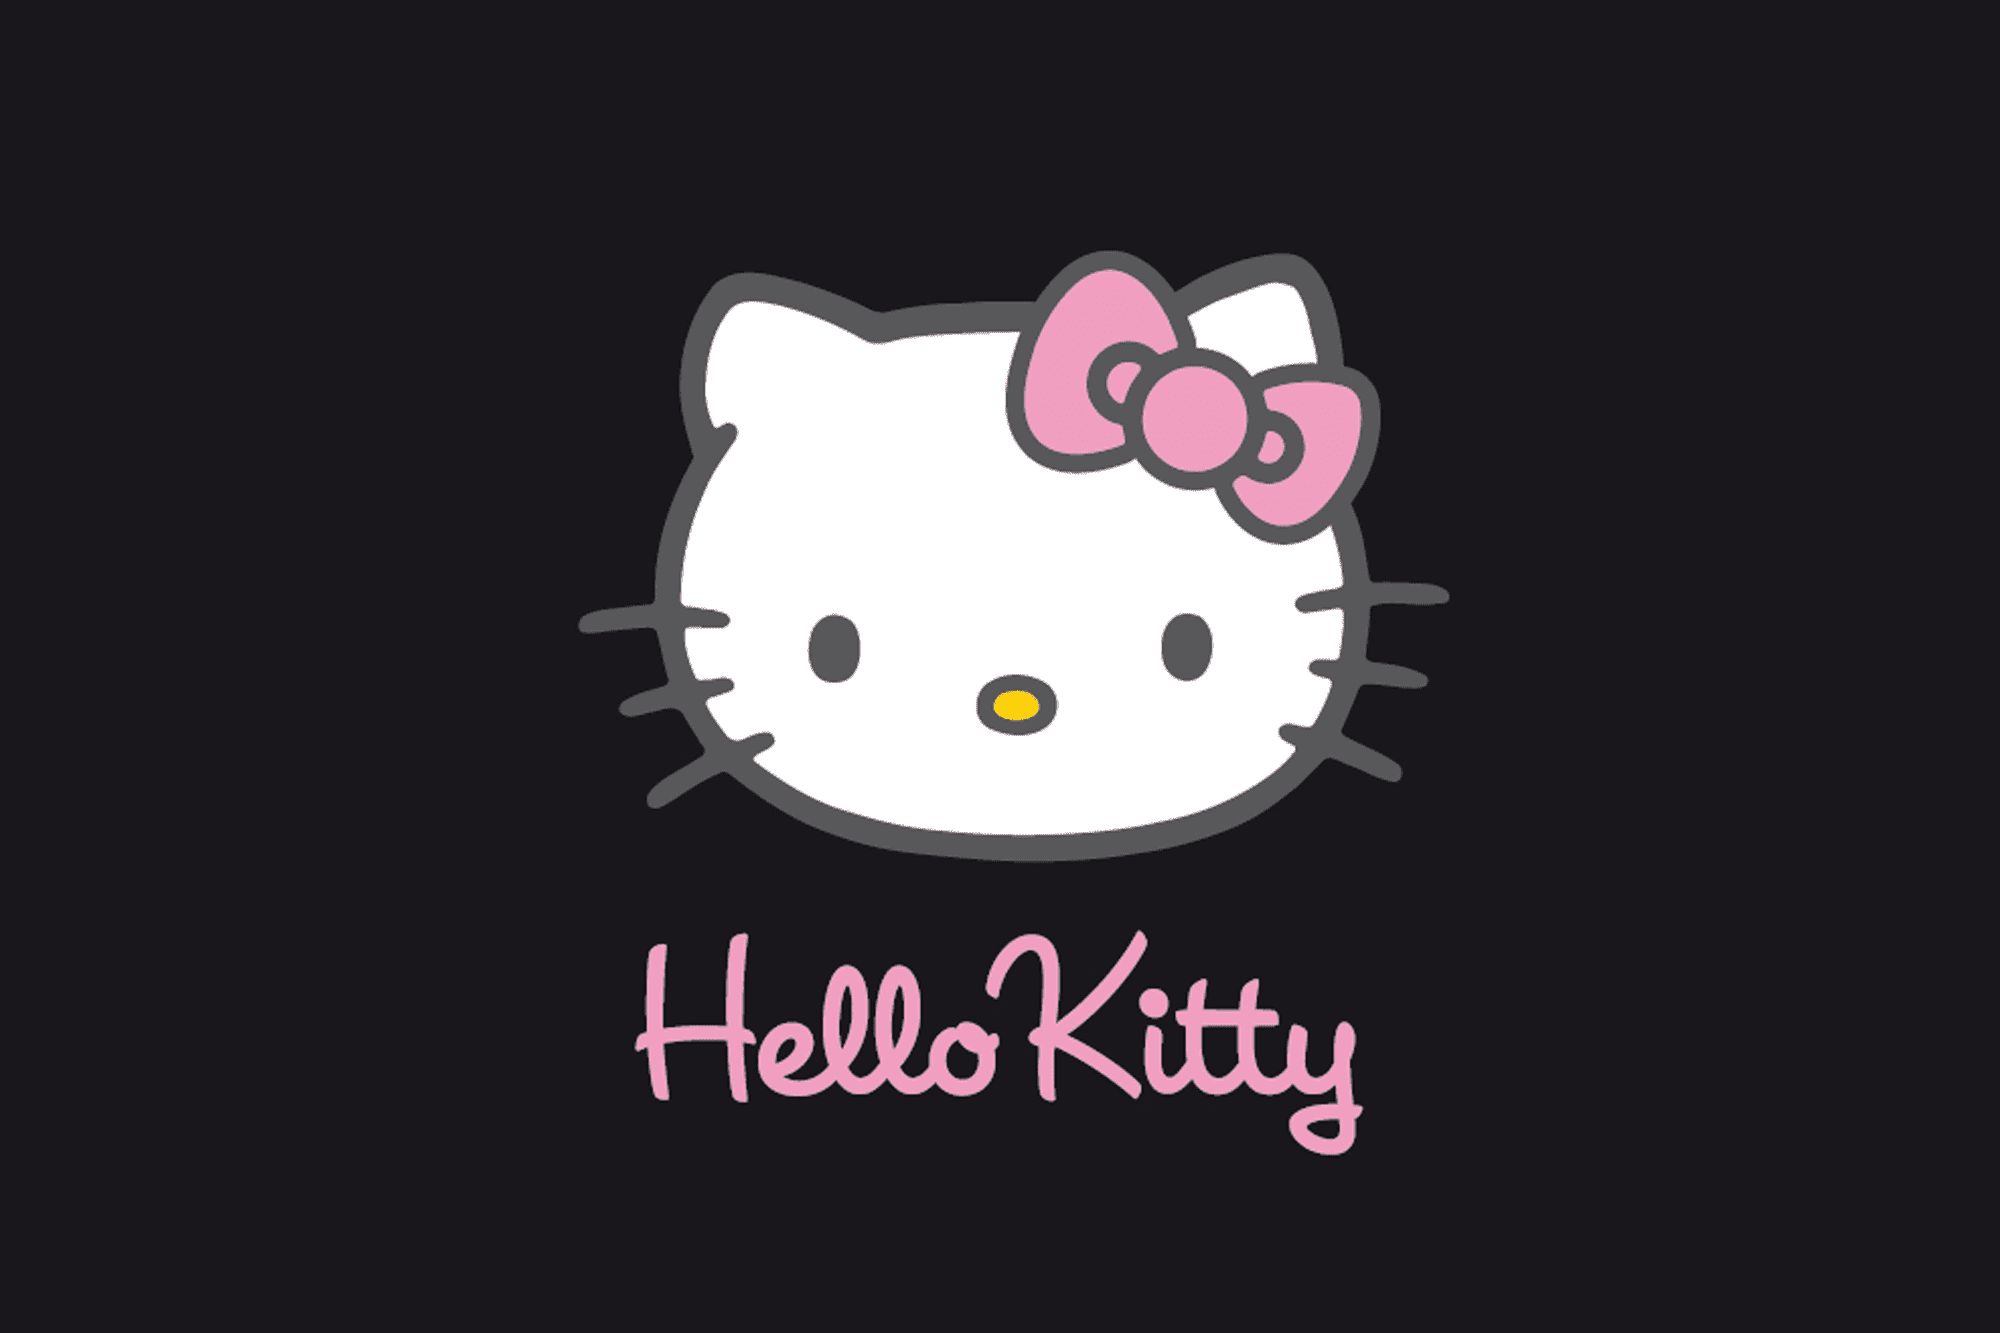 Los mejores fondos de pantalla gratuitos de Hello Kitty